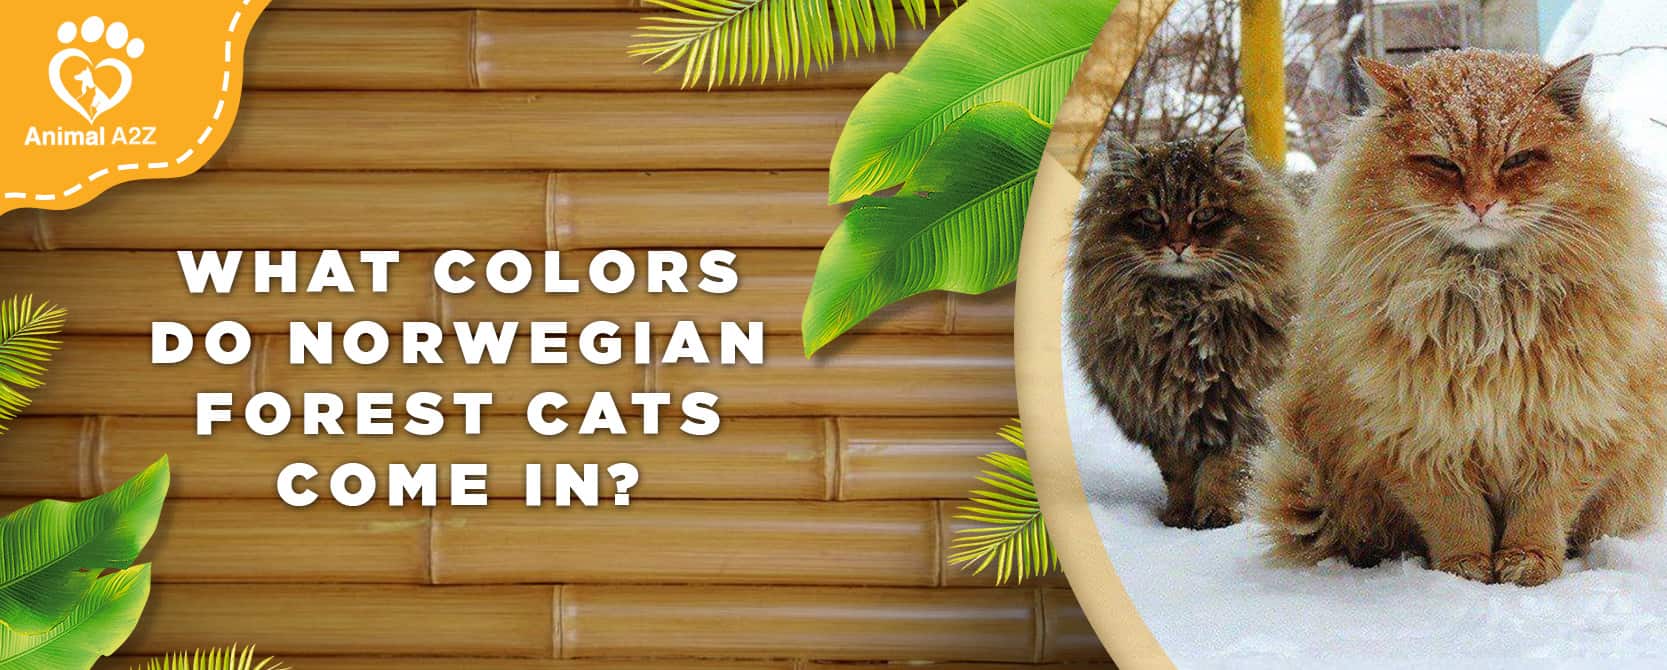 Welche Farben gibt es bei Norwegischen Waldkatzen?